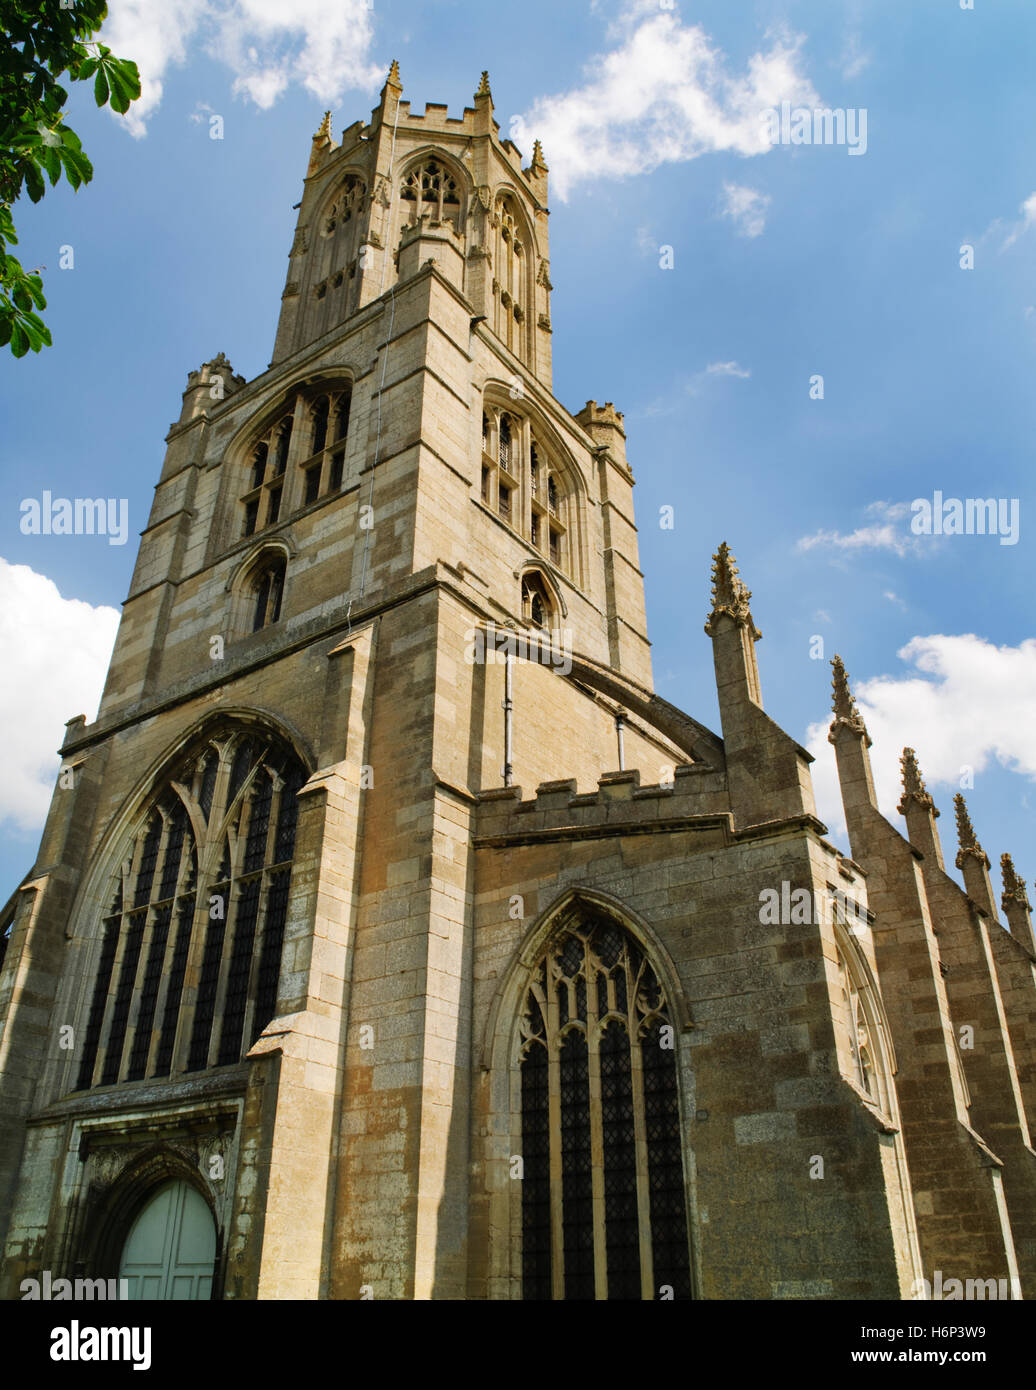 Turm, achteckigen Laterne & S Gang Fotheringhay C15th Kirche, Northamptonshire, mit einem Schwibbogen & wichtigsten Strebepfeiler von Zinnen gekrönt. Stockfoto